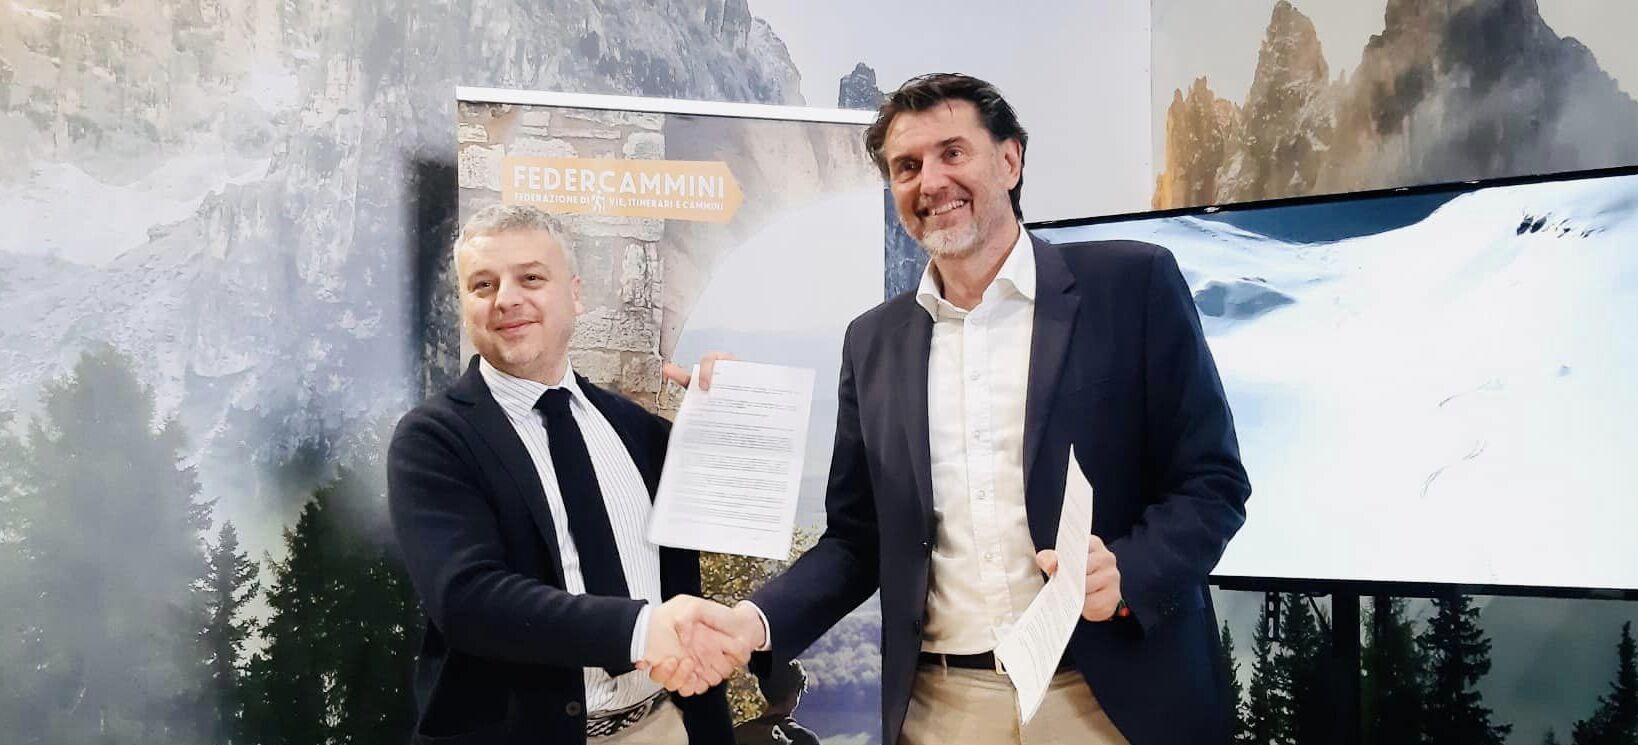 Unificare la segnaletica dei sentieri italiani: accordo tra Club Alpino Italiano e FederCammini